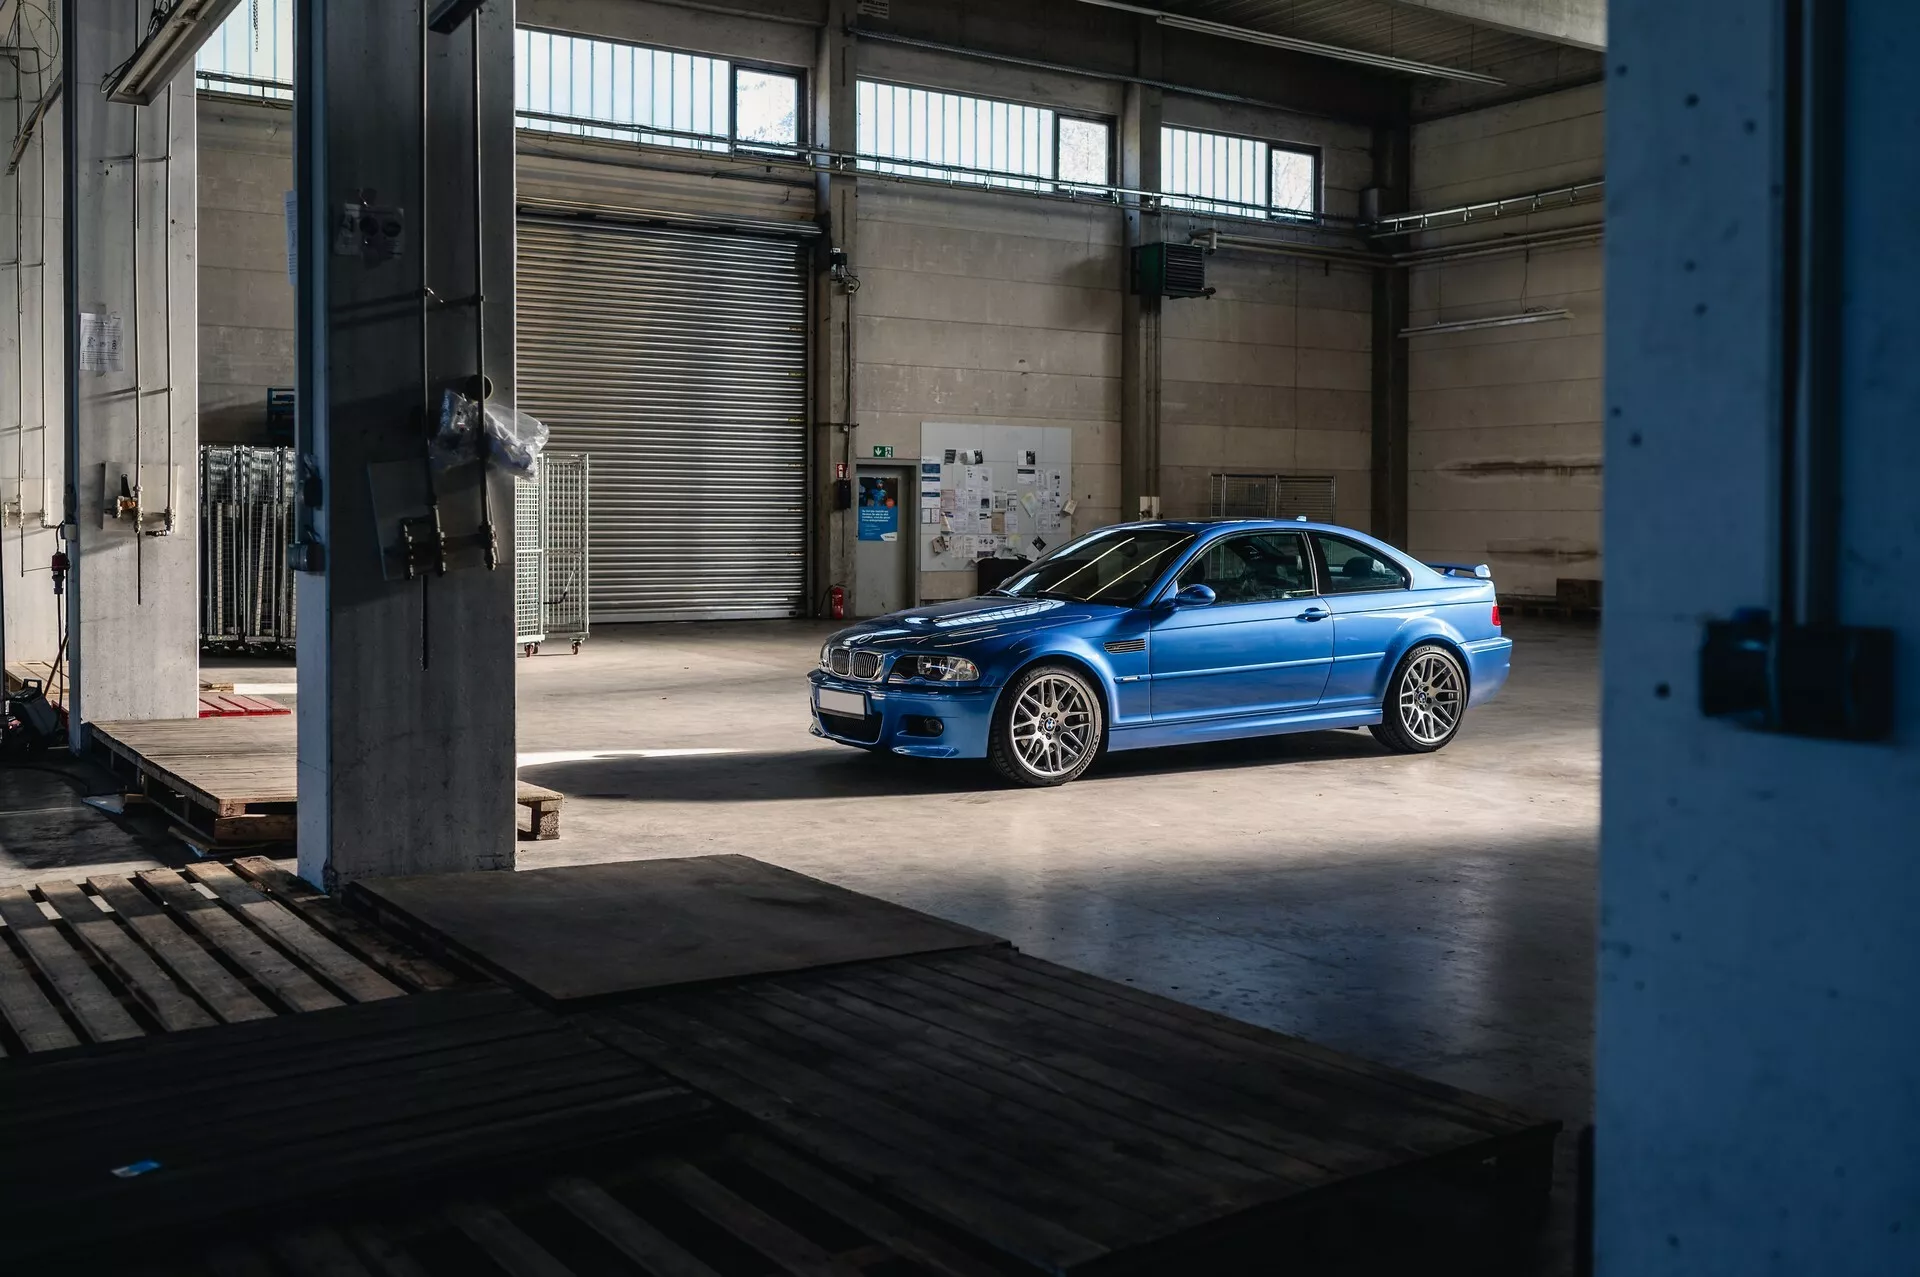 RM Sotheby's mở phiên đấu giá BMW M3 E46 2003 tròn 20 năm tuổi